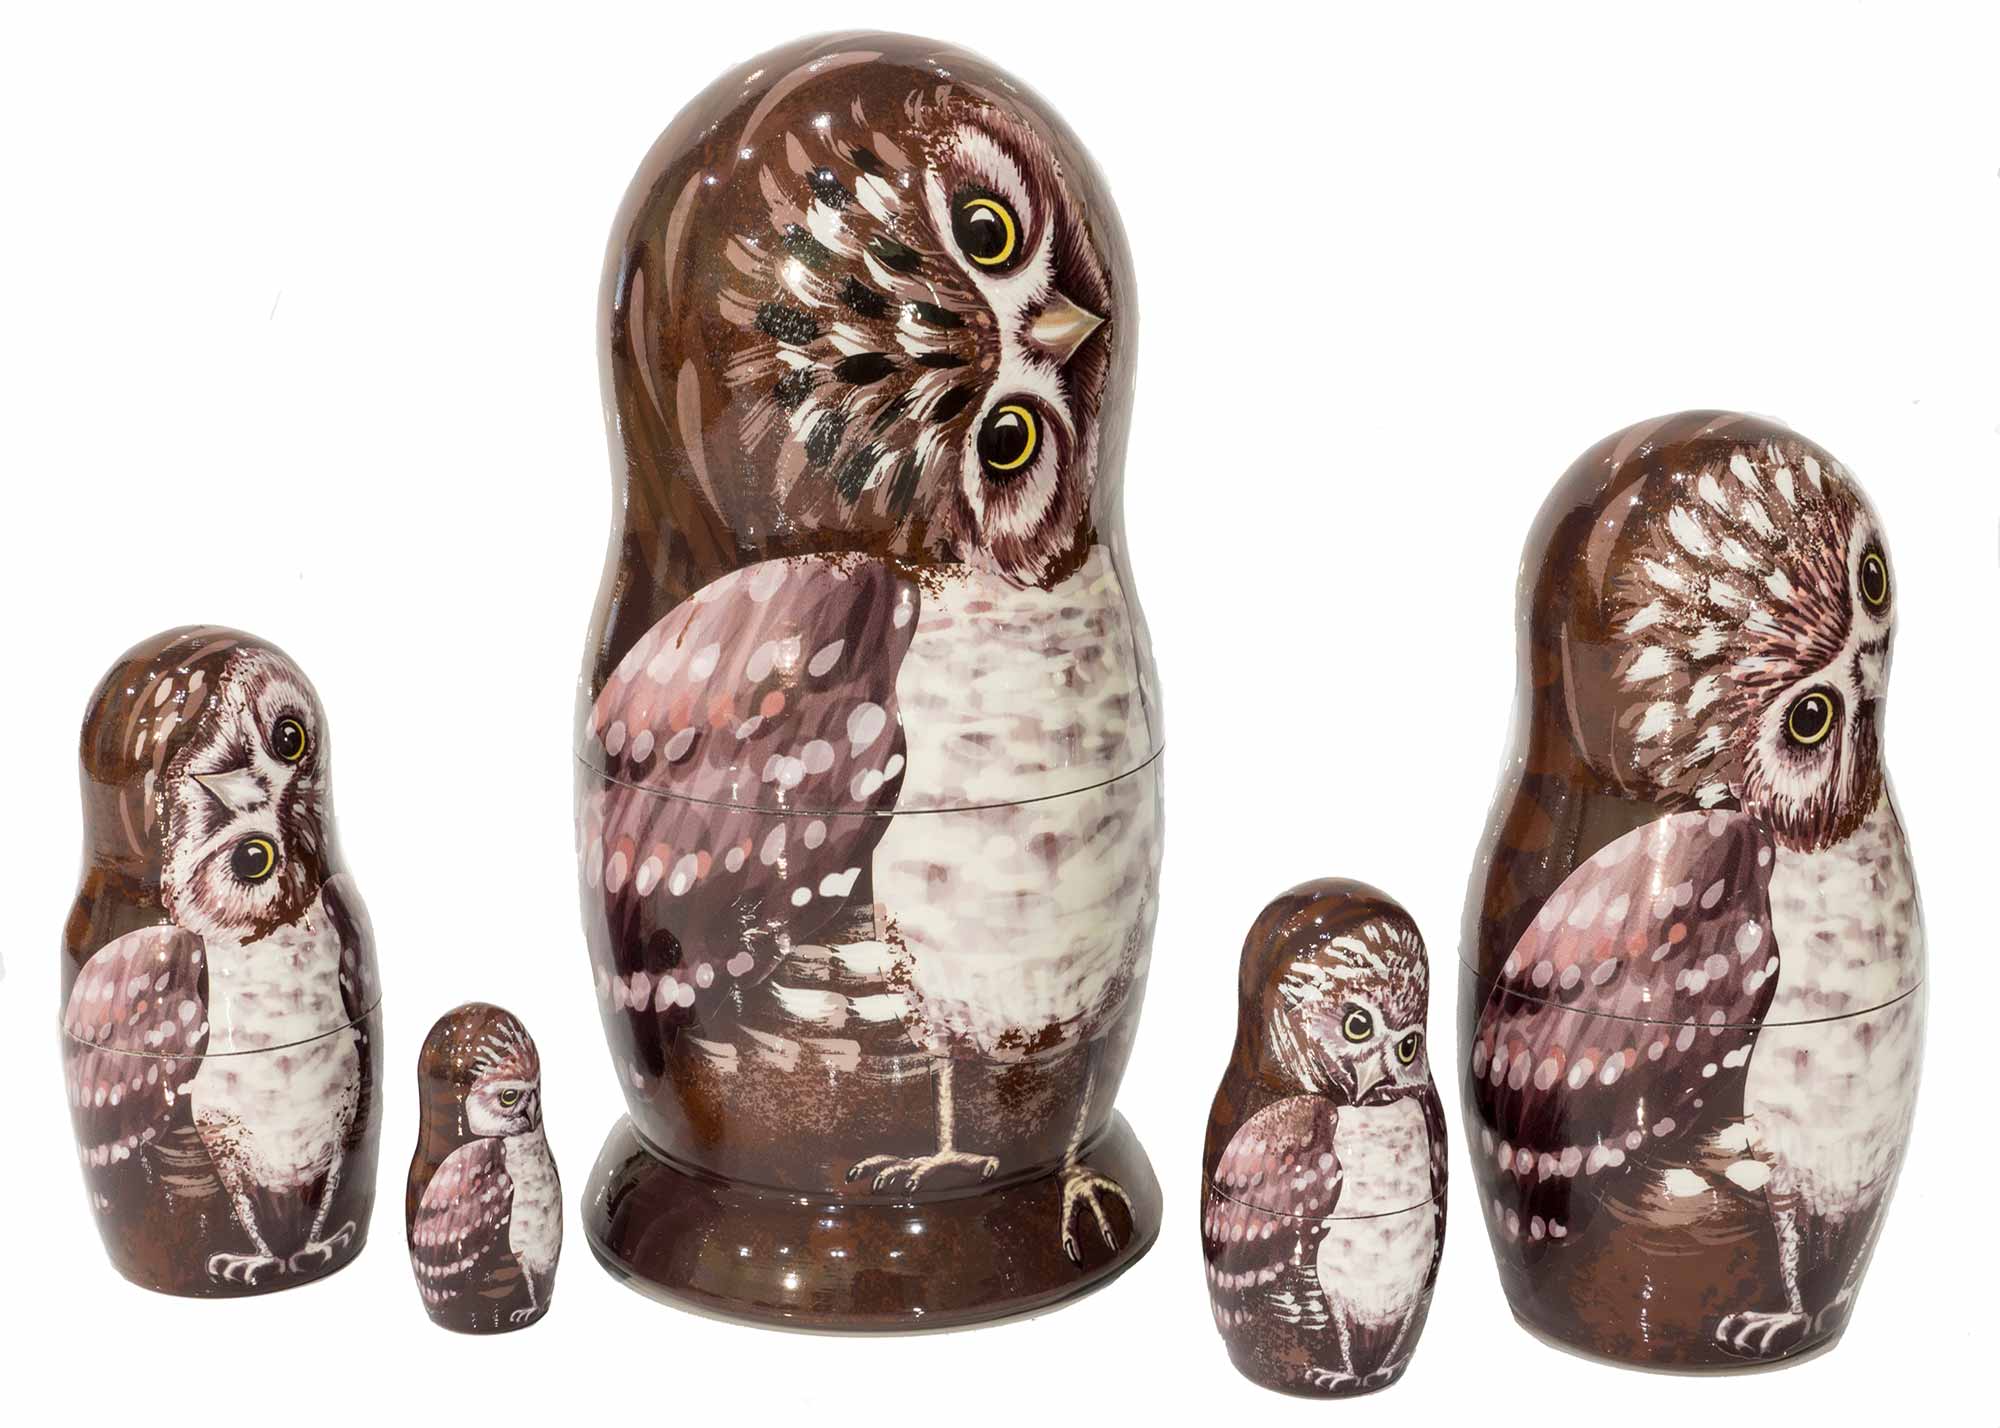 Buy Burrowing Owl Nesting Doll 5pc./6" at GoldenCockerel.com